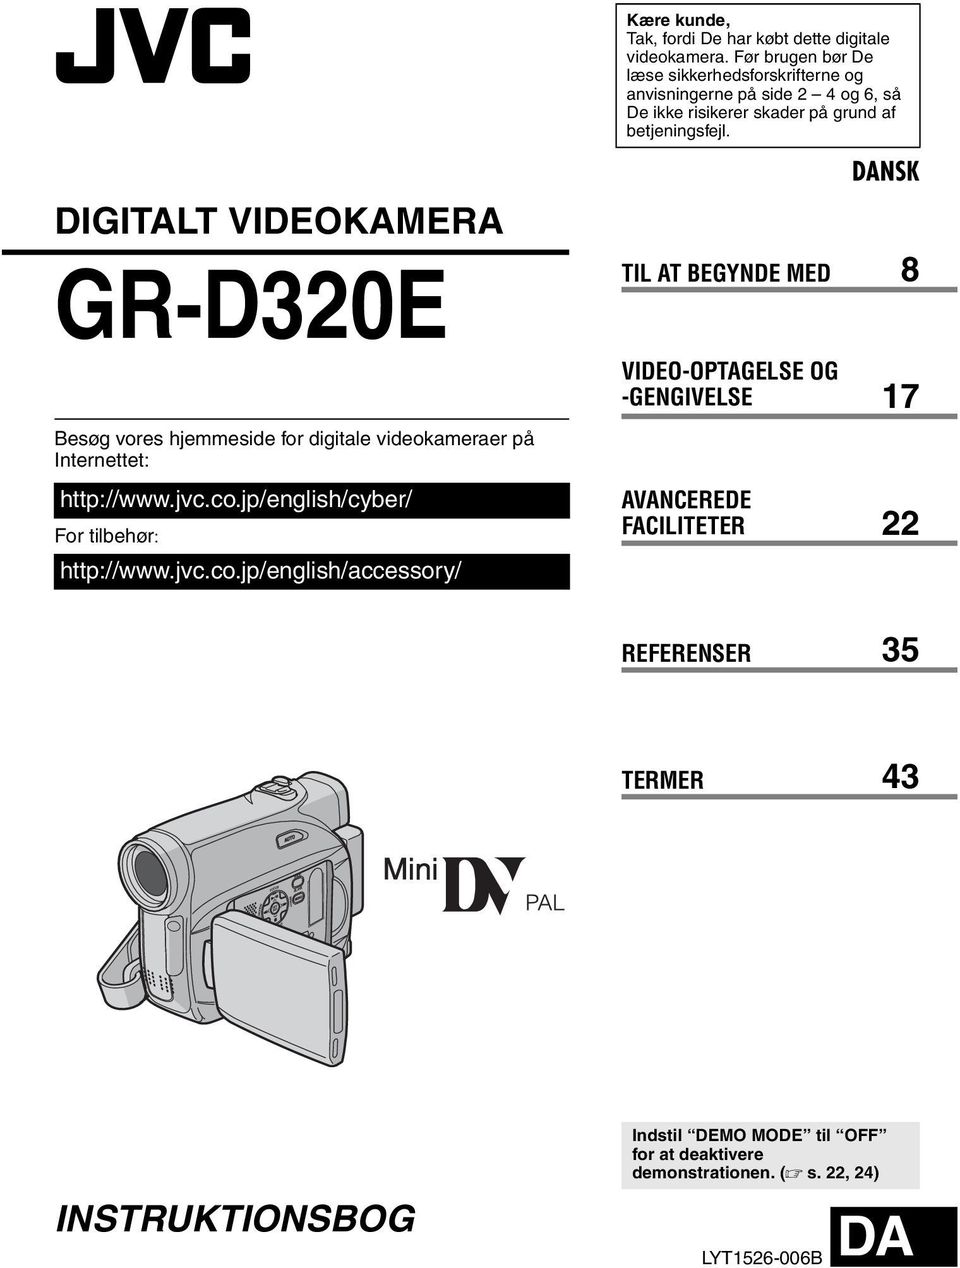 DIGITALT VIDEOKAMERA GR-D320E Besøg vores hjemmeside for digitale videokameraer på Internettet: http://www.jvc.co.